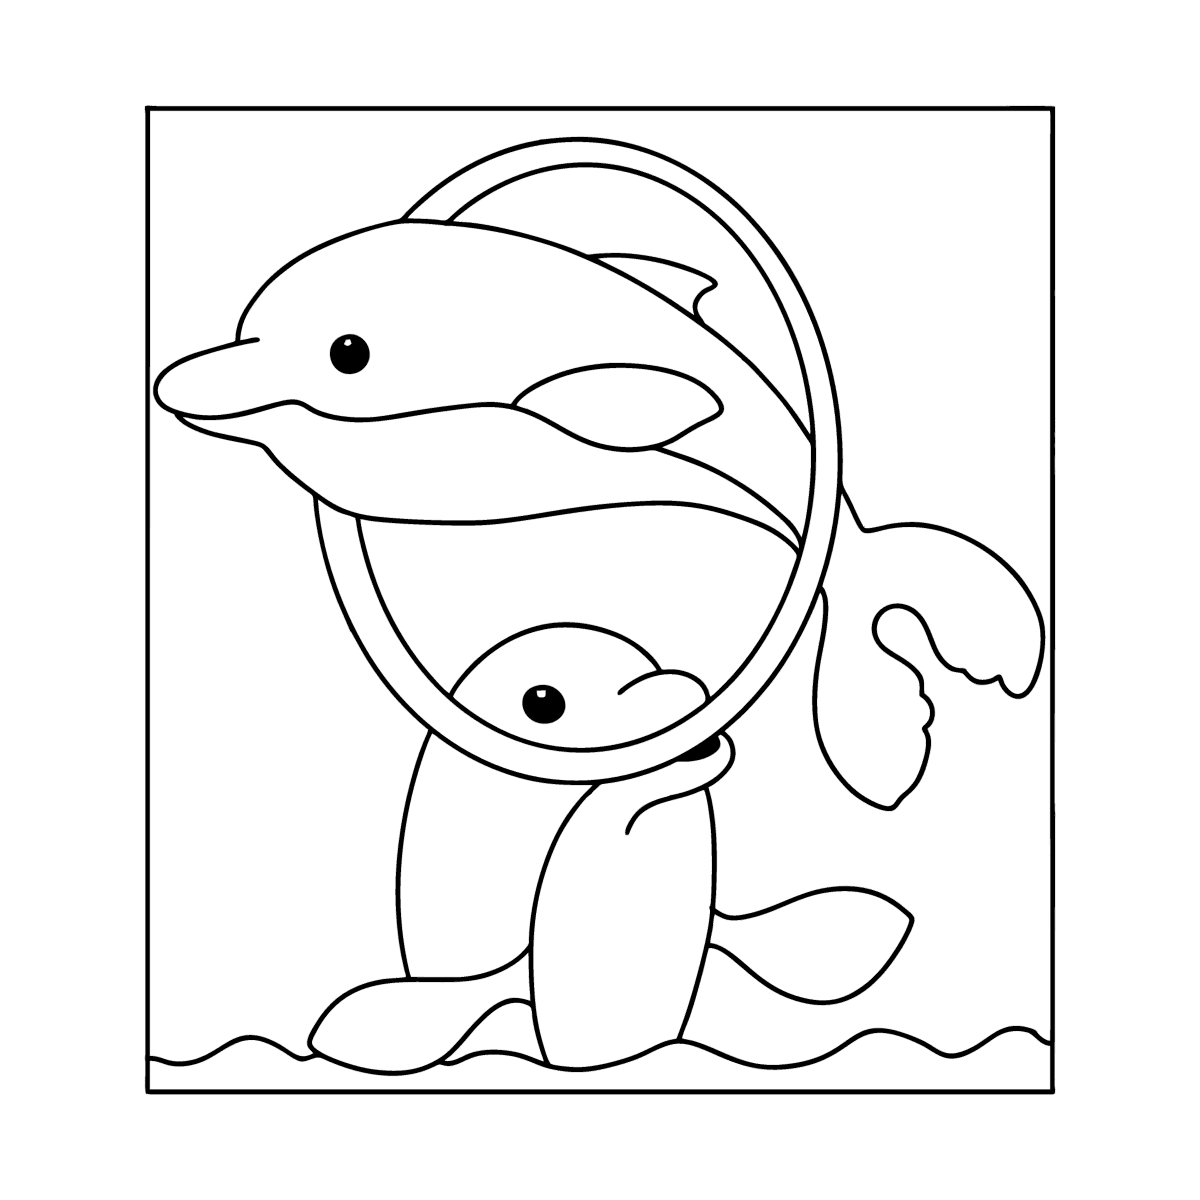 Дельфин раскраска для детей 4-5 лет